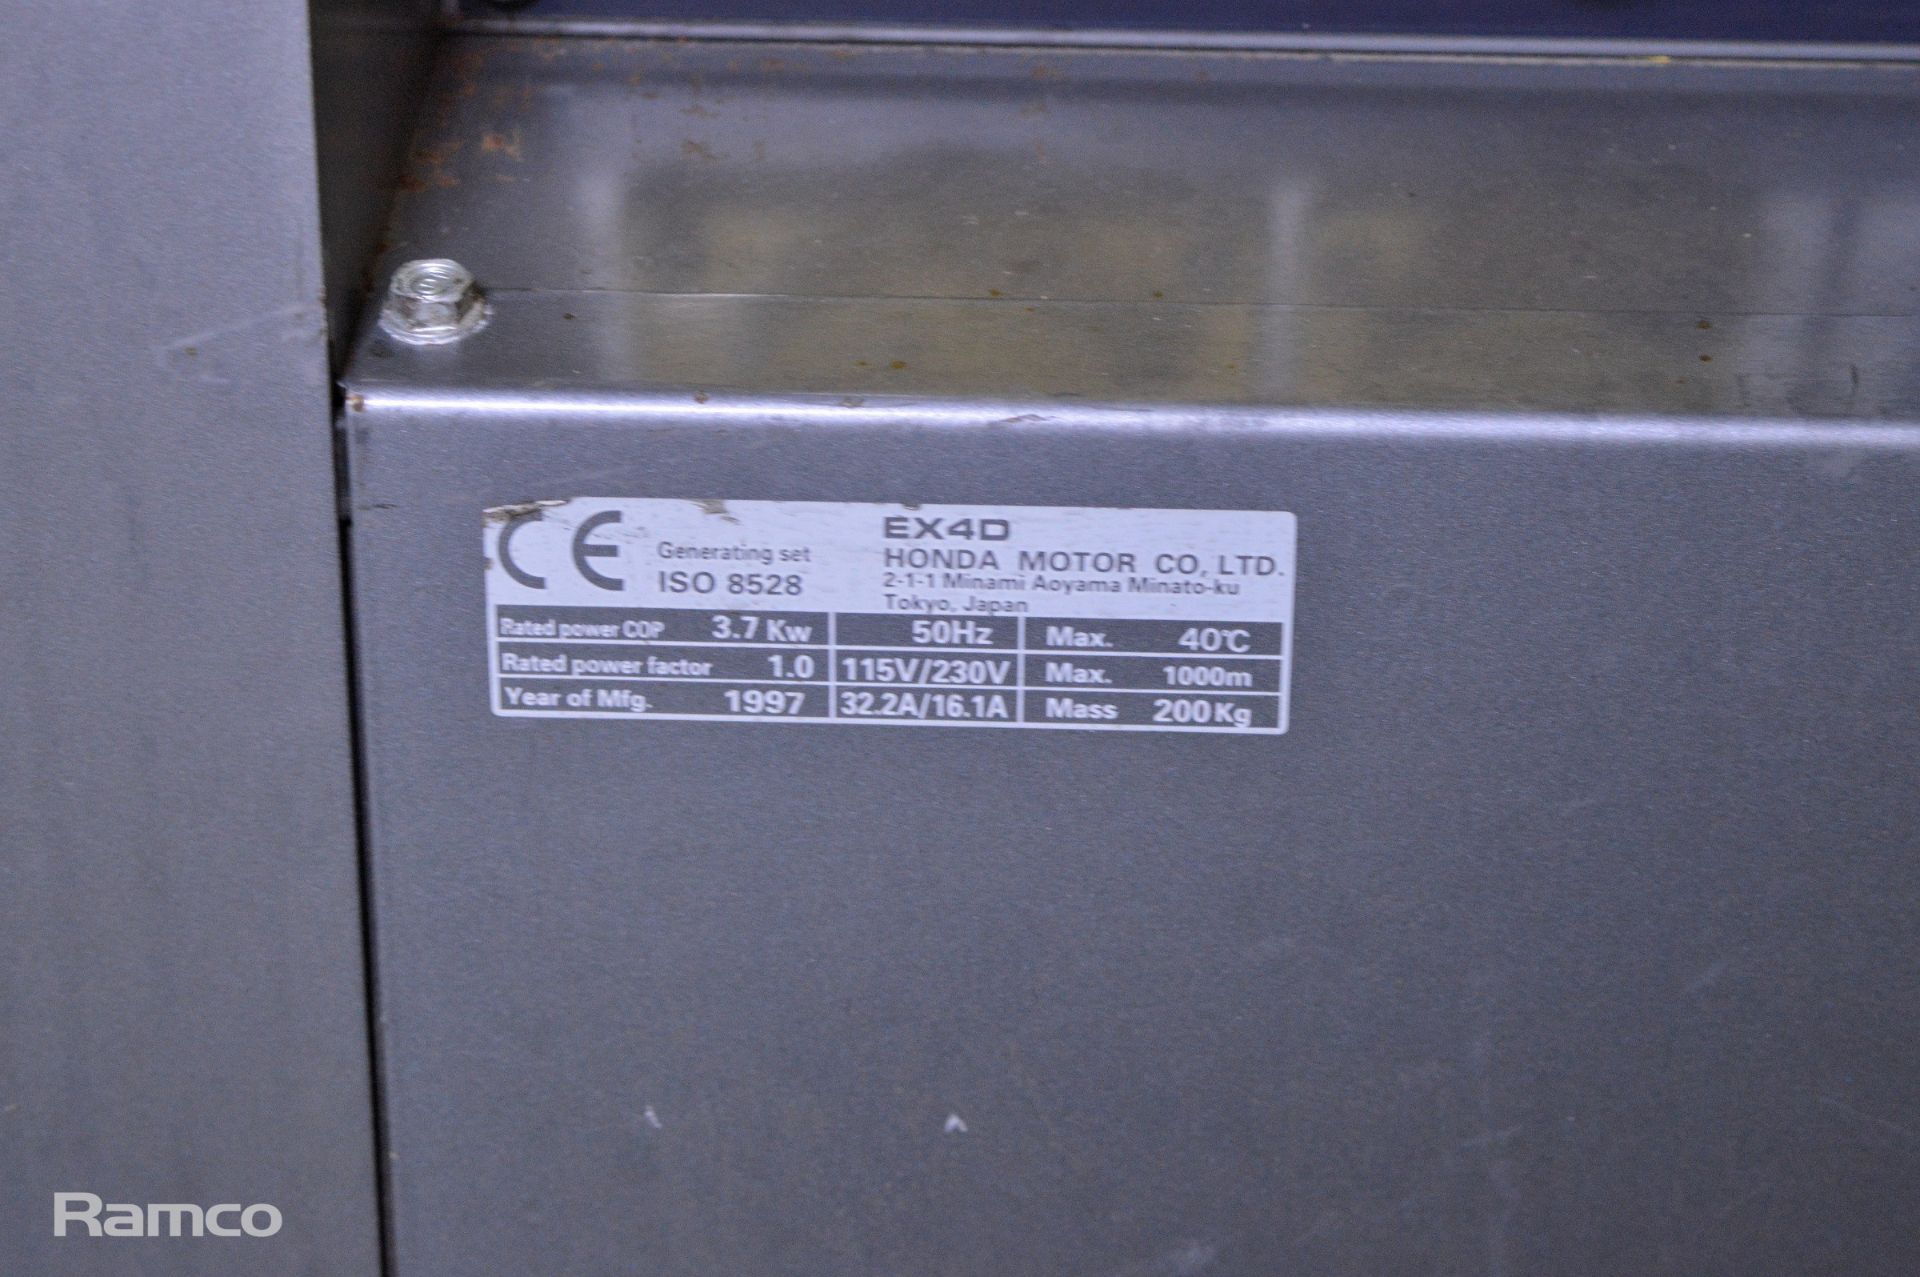 Honda EX 4D silent diesel generator - 3.7kW - 1997 - 50hz - 115V / 230V - 32.2A / 16.1A - - Image 5 of 11